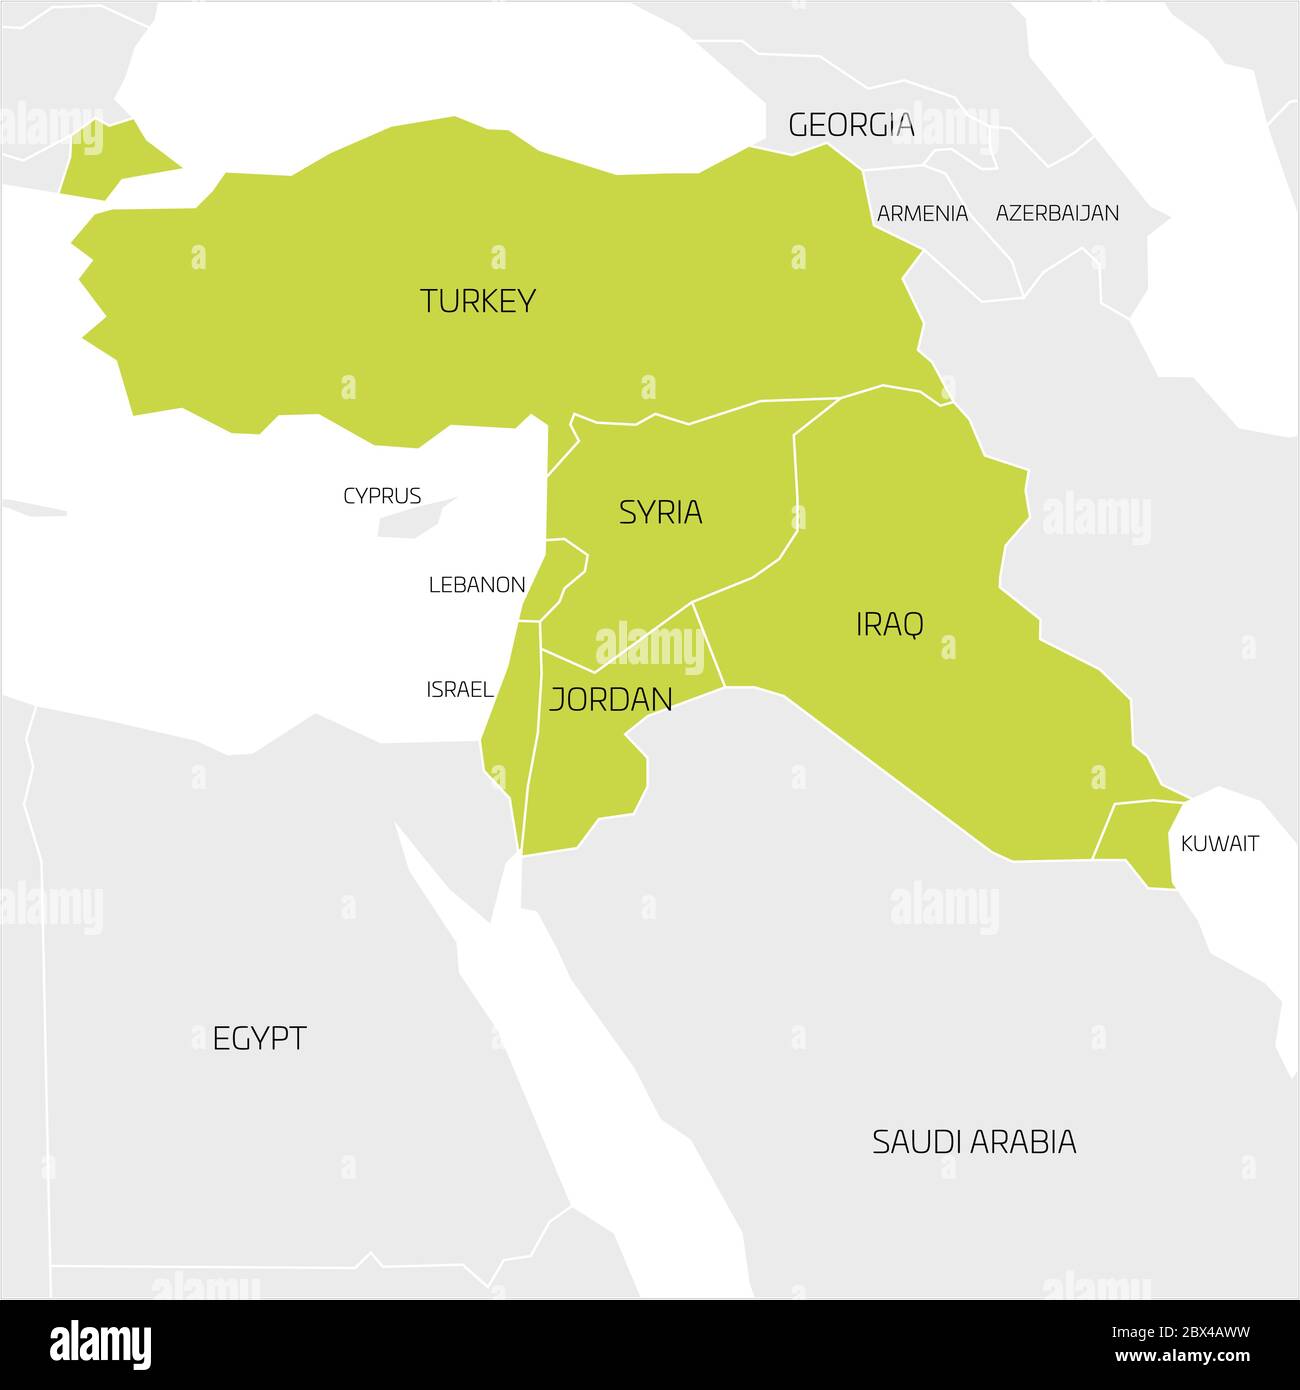 Karte des Nahen Ostens oder des Nahen Ostens transkontinentale Region mit grün hervorgehoben Türkei, Syrien, Irak, Jordanien, Libanon und Israel. Flache Karte mit dünnen weißen Statusgrenzen. Stock Vektor